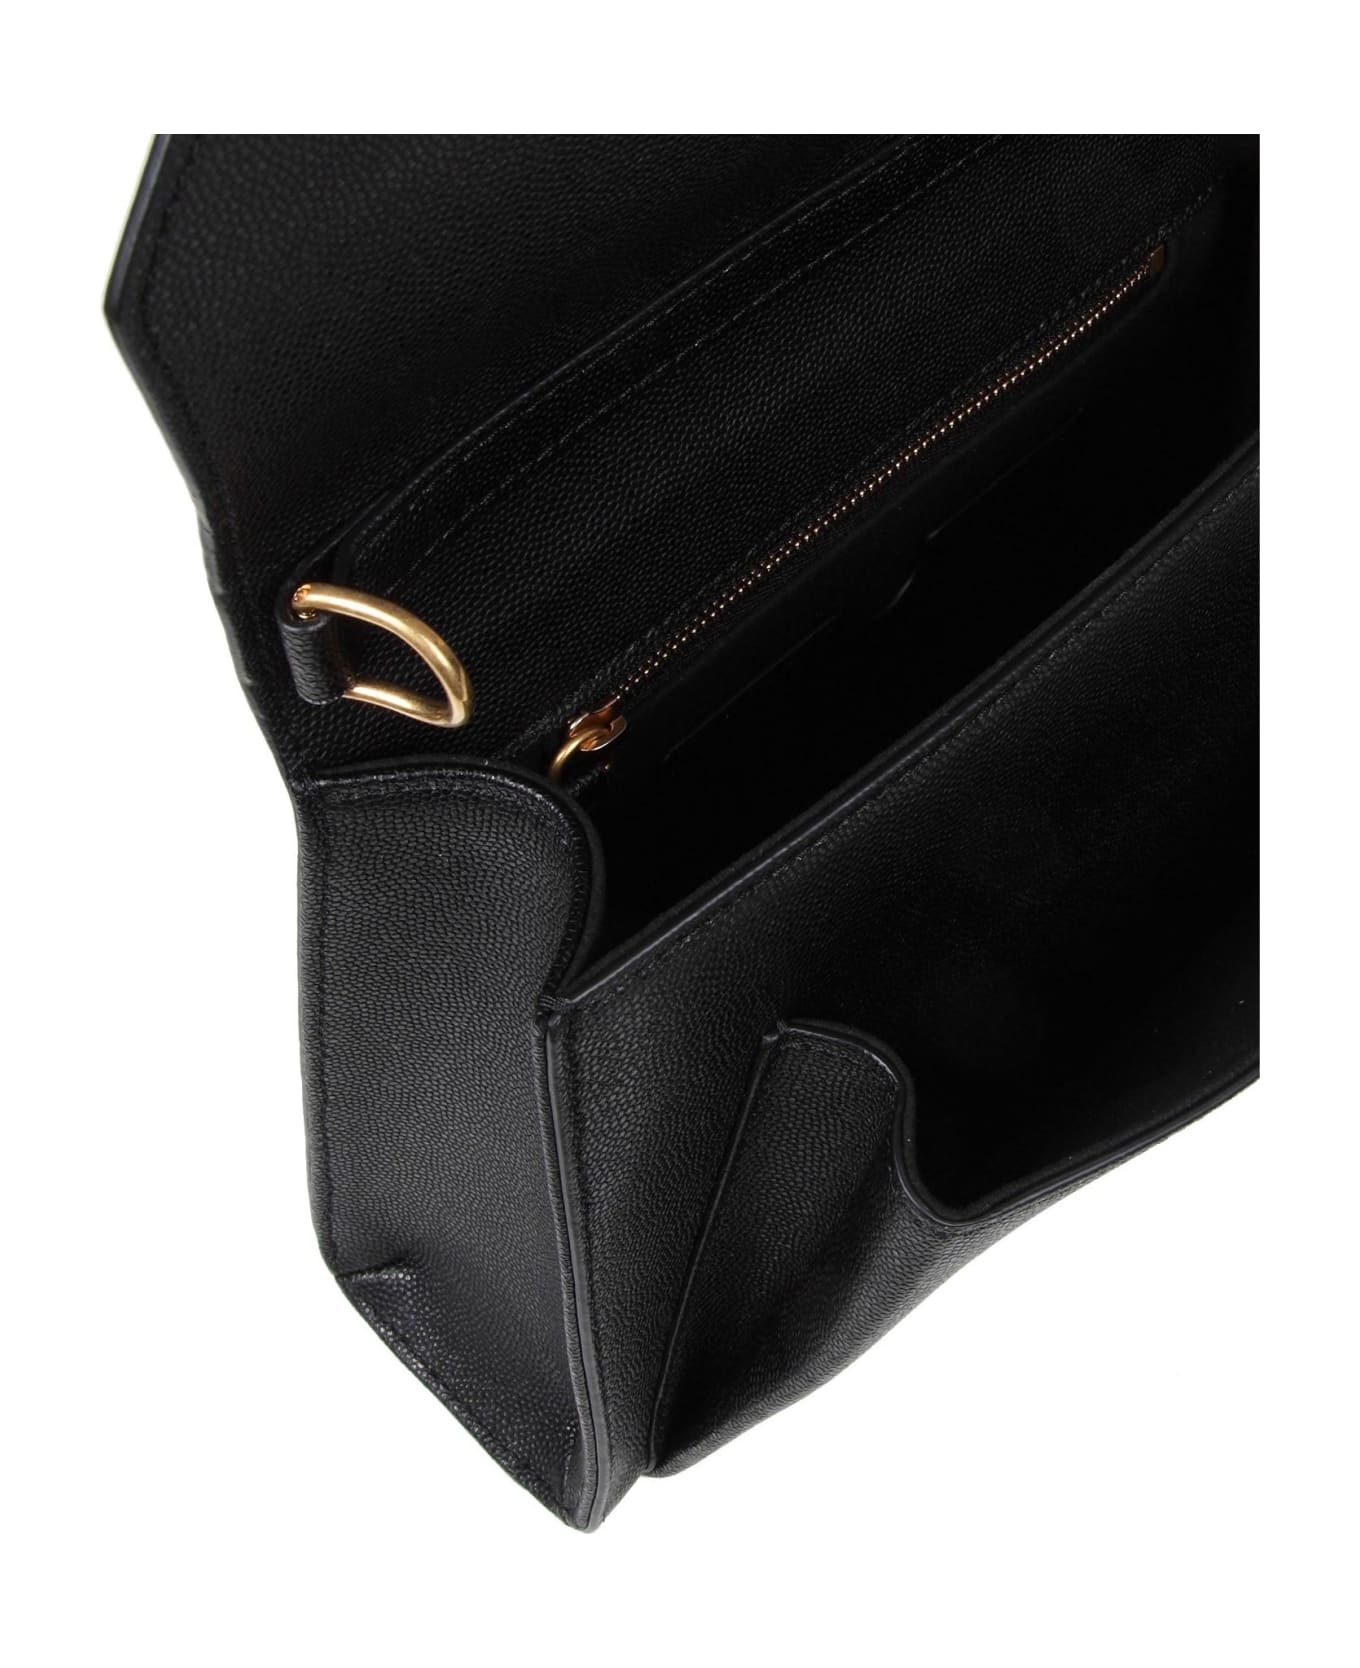 Balmain Emblem Bag In Calfskin With Decorative Buttons - 5